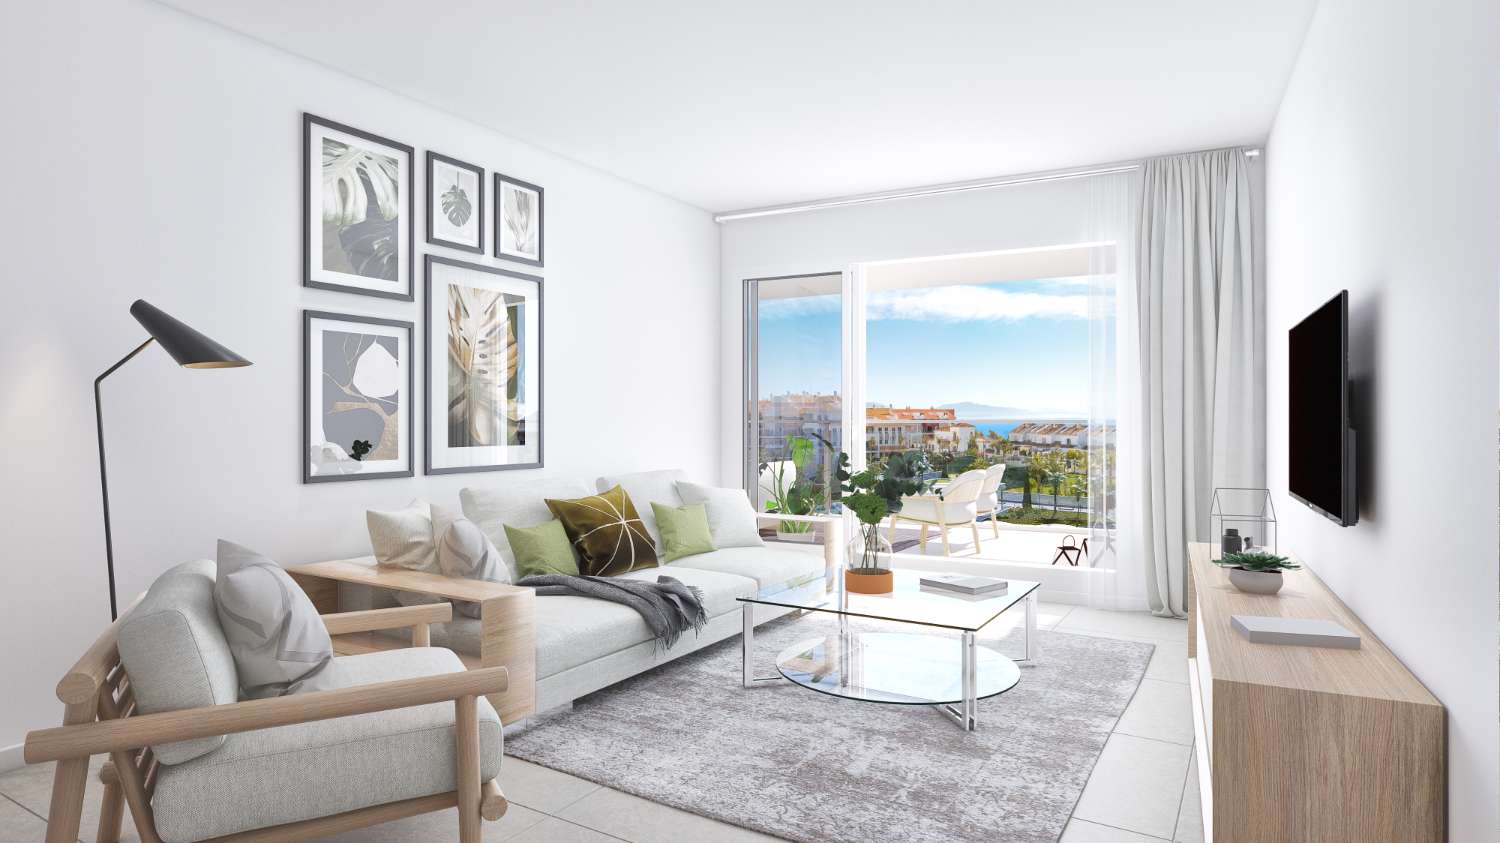 New apartment development in Aldea Beach - Costa del Sol